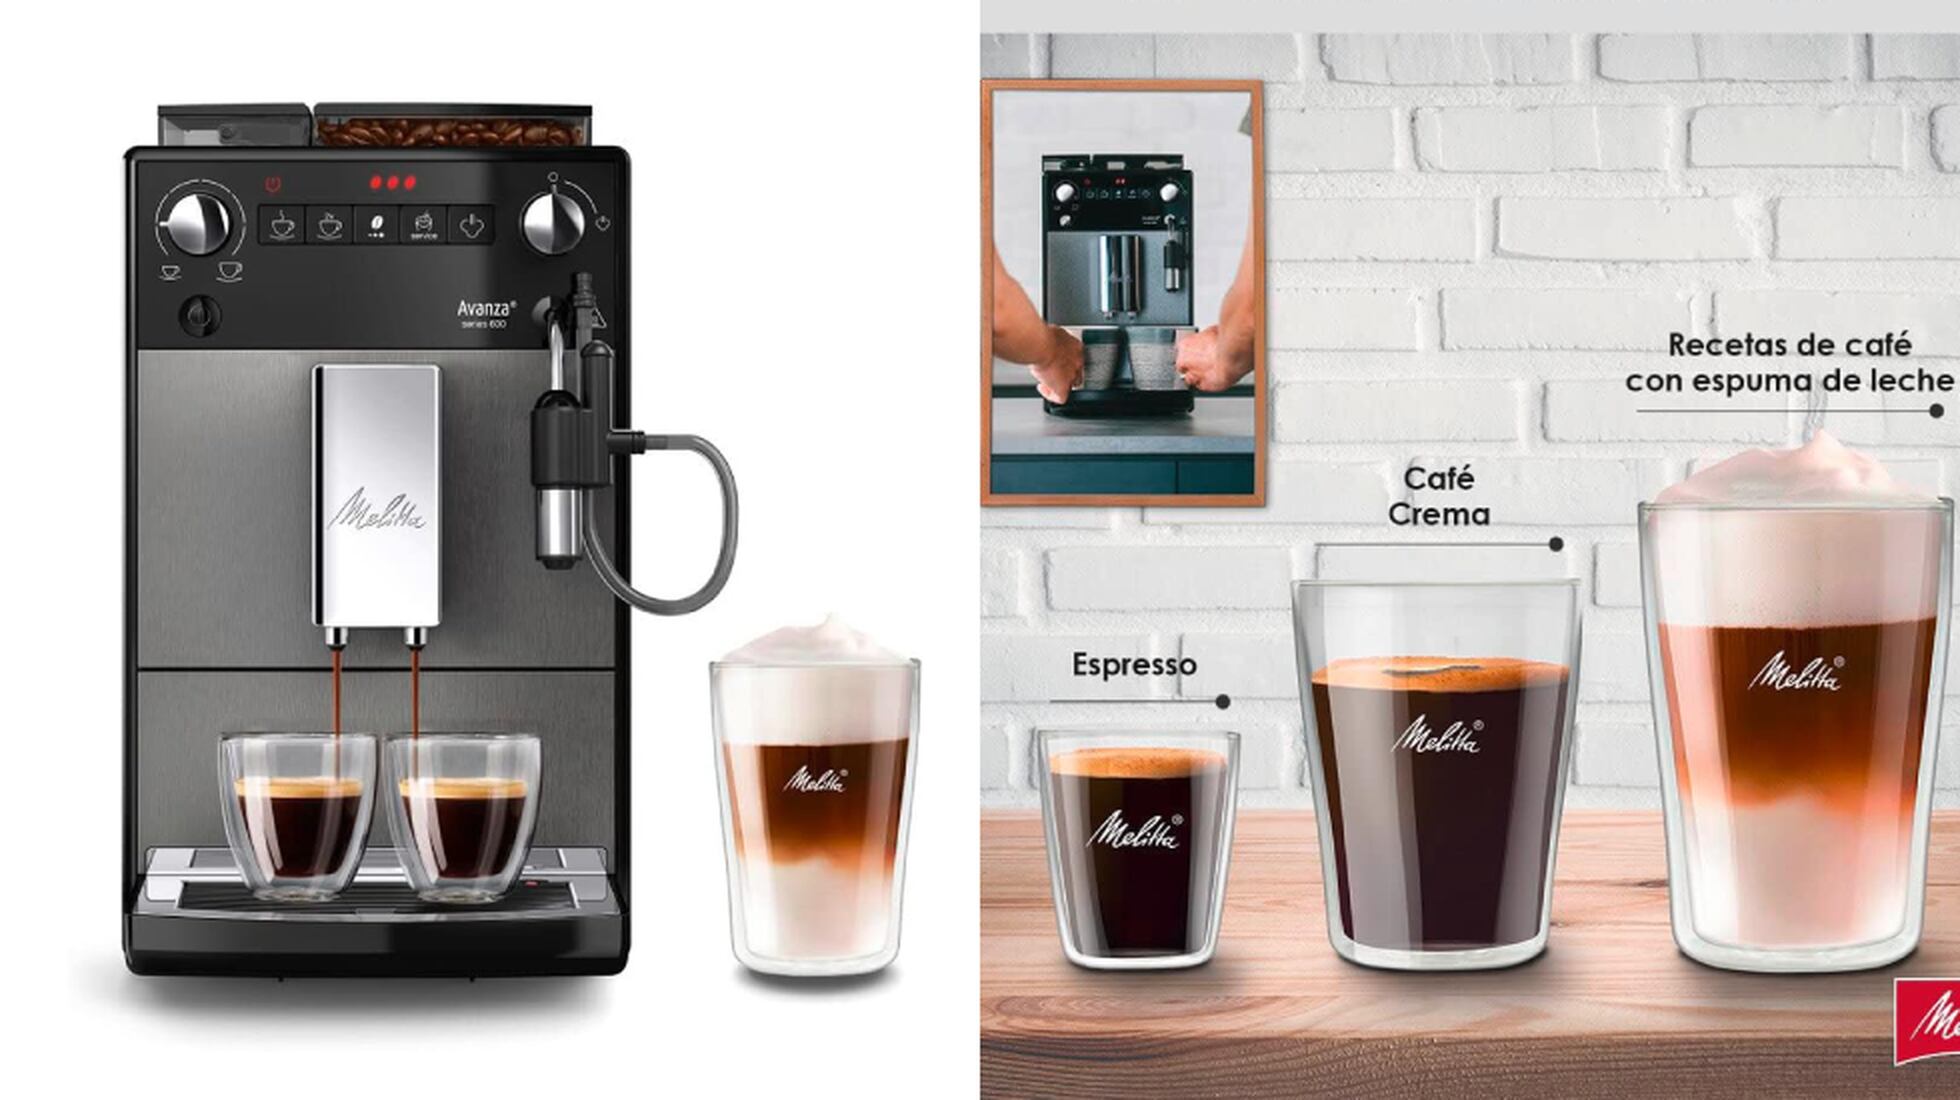 Esta cafetera Melitta de alta gama lo tiene todo: depósitos para café  molido y granos de café, molinillo y espumador automático